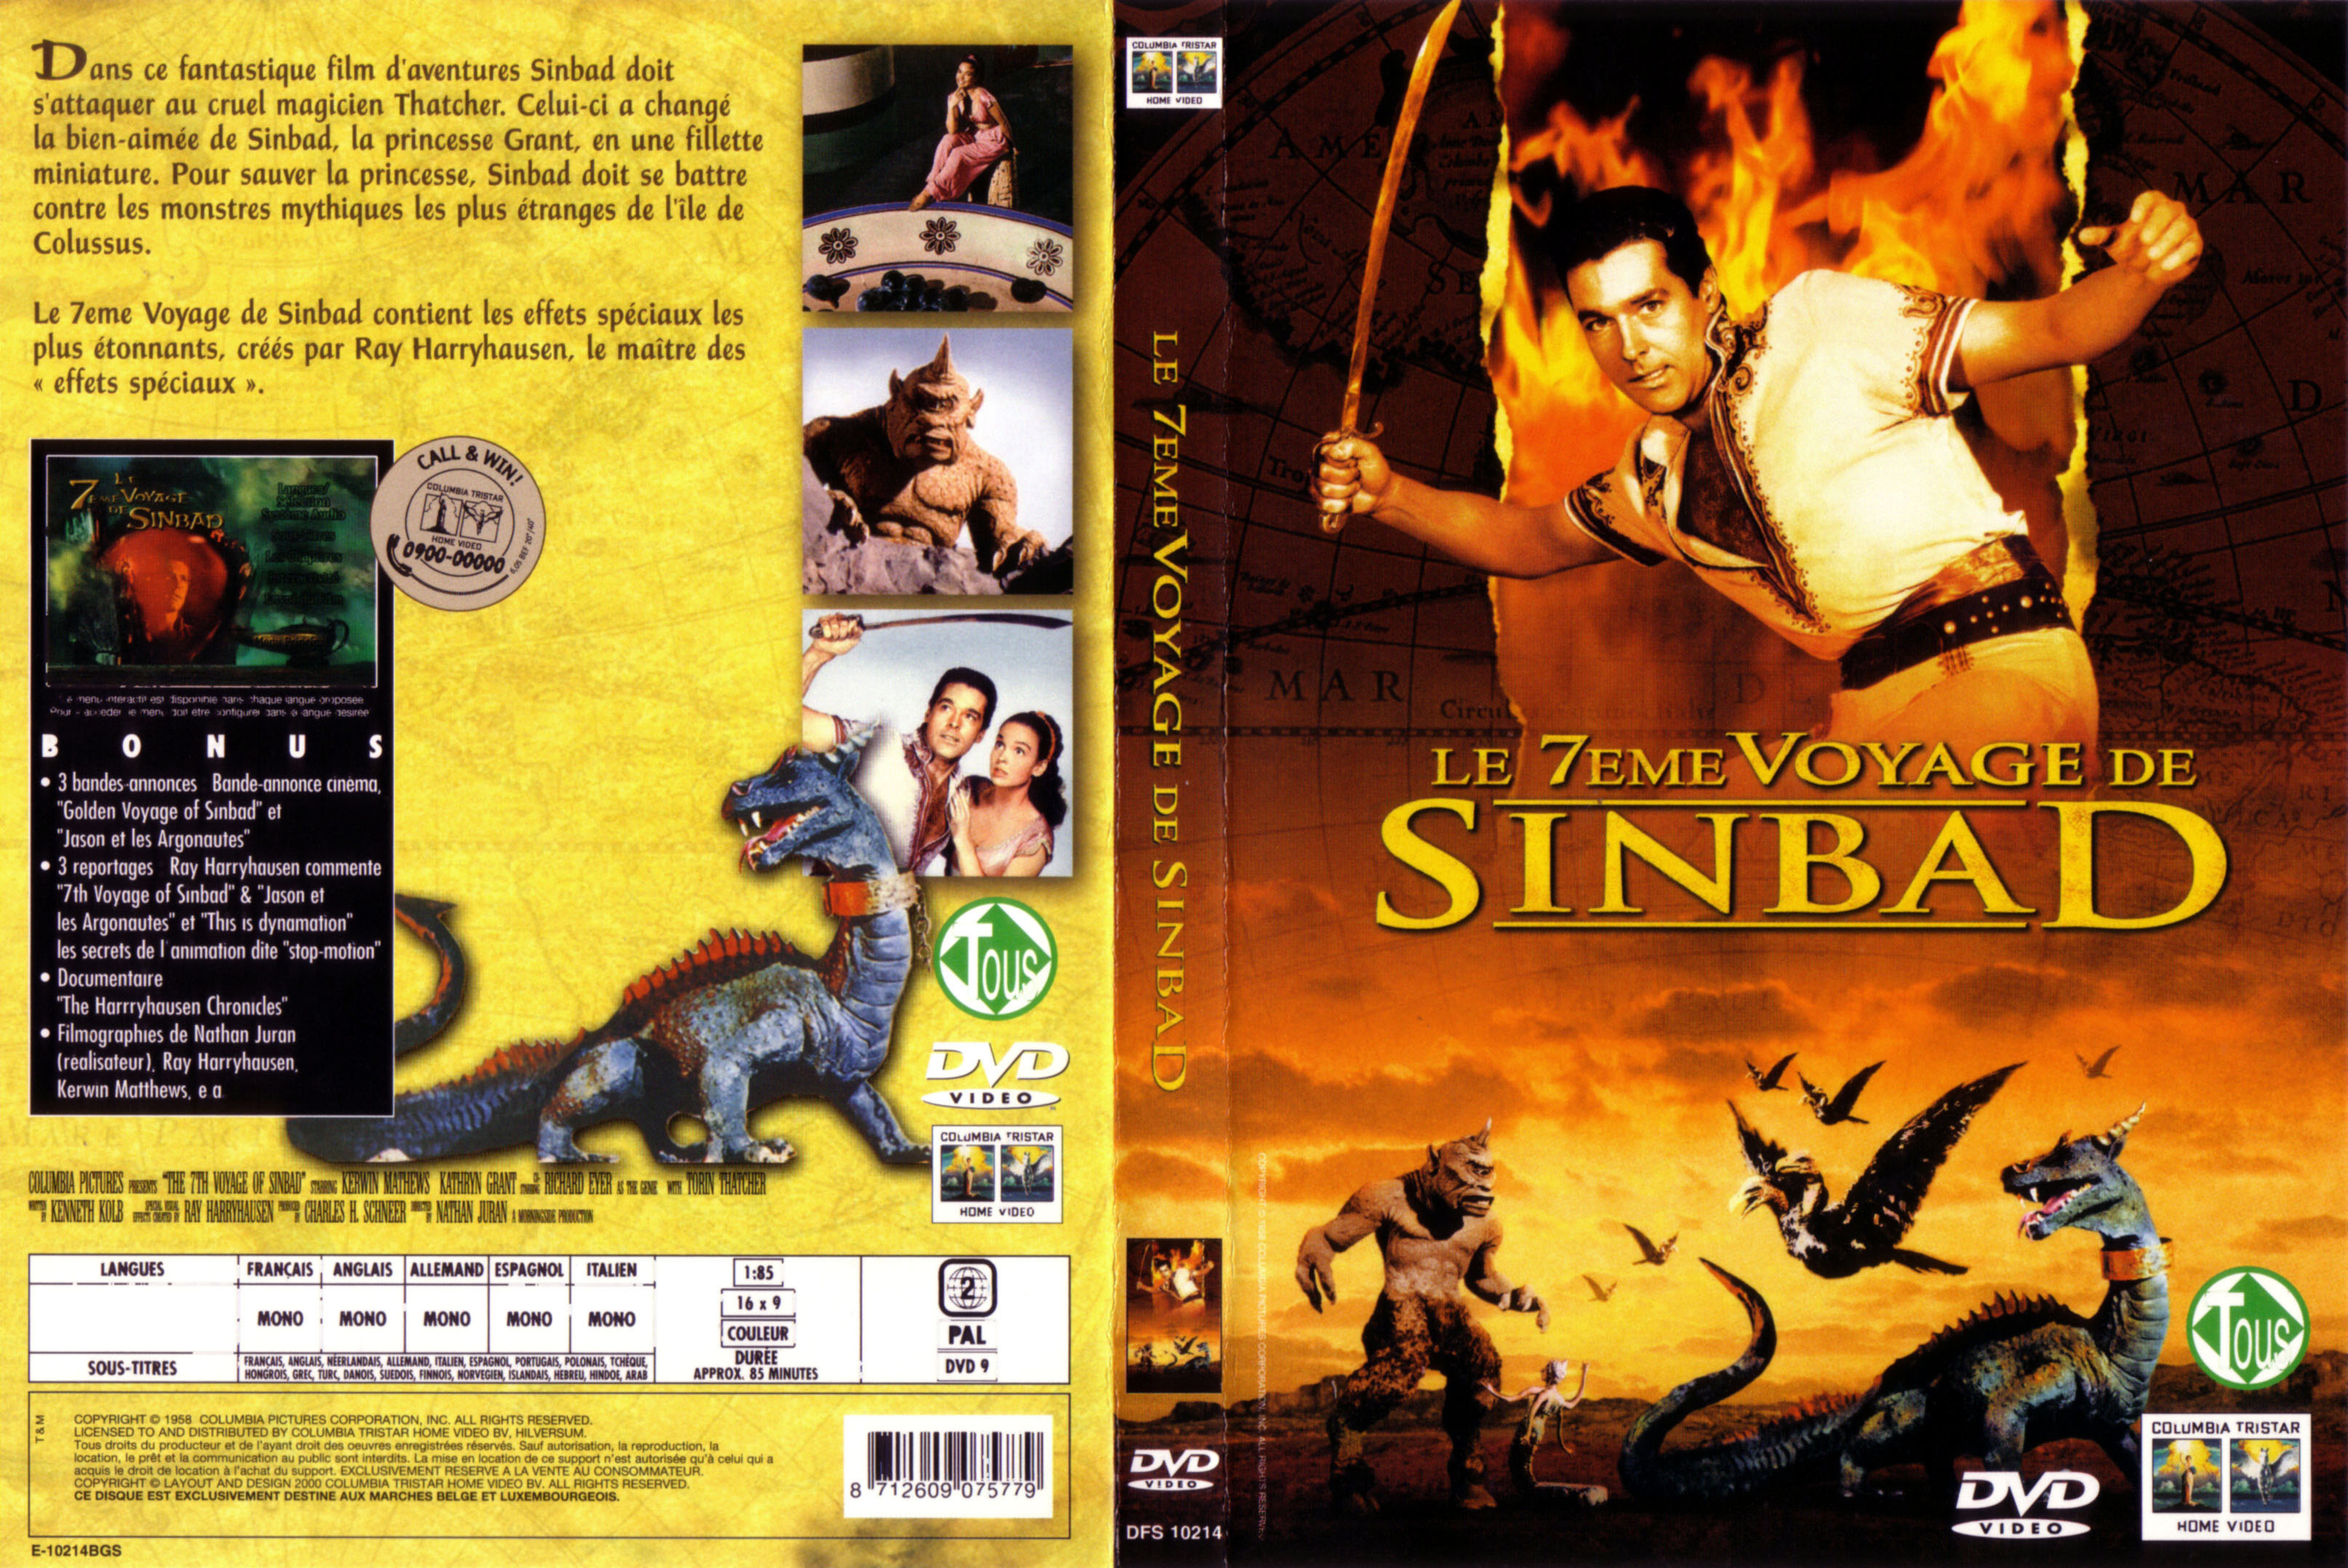 Jaquette DVD Le 7 me voyage de Sinbad v2